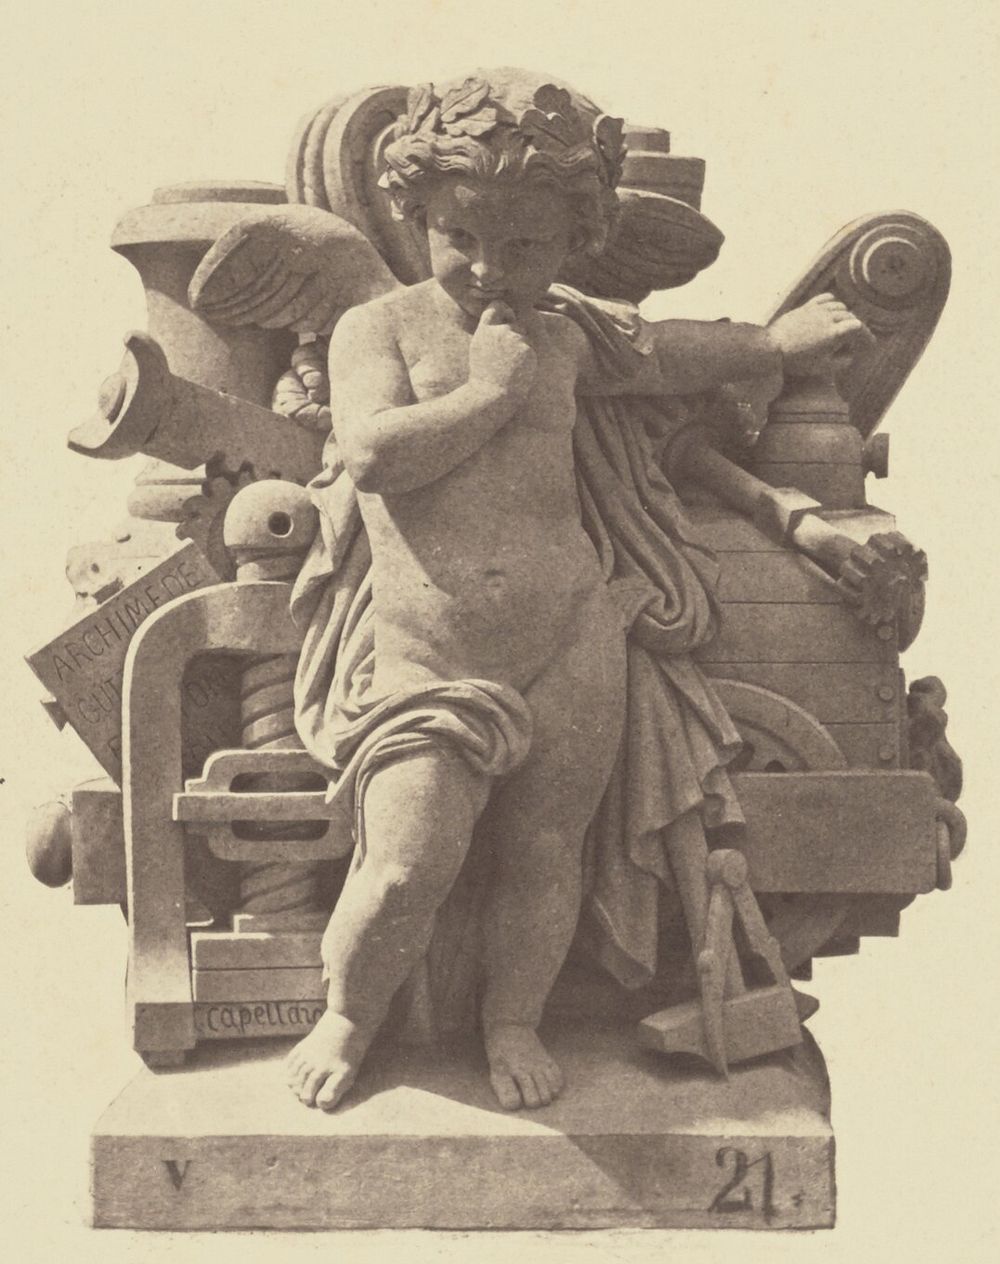 "La Mécanique", Sculpture by Charles Capellaro, Decoration of the Louvre, Paris by Édouard Baldus